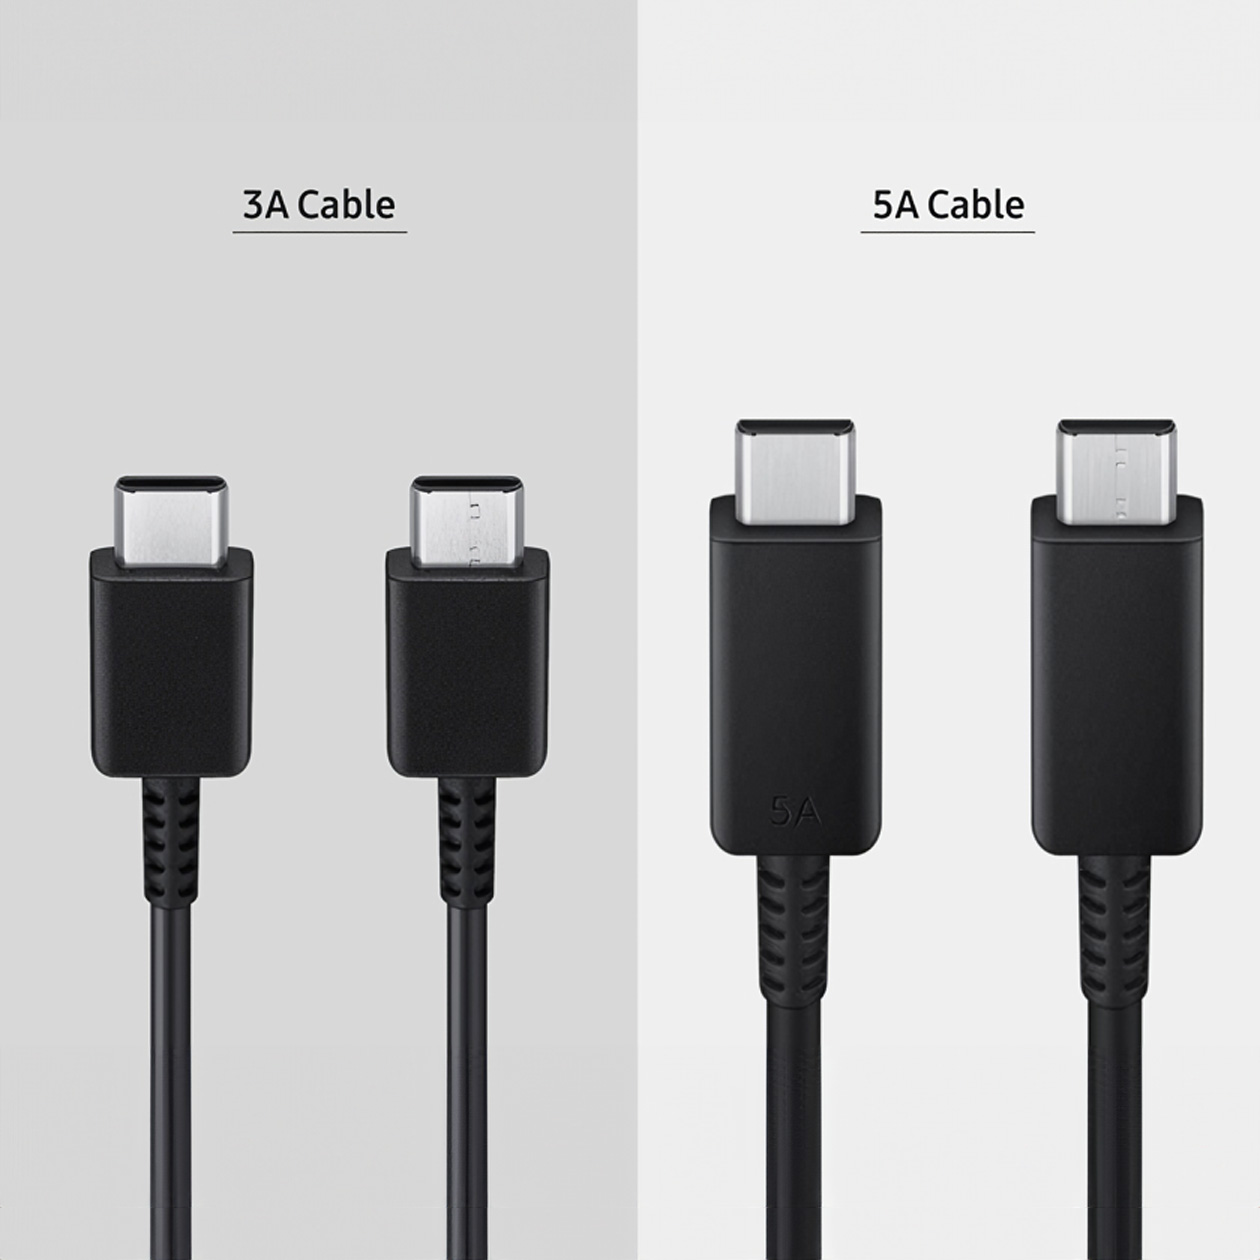 Различить USB⁠-⁠C-кабели на 3 и 5 амперов можно визуально — второй толще и крепче. Источник: samsung.com